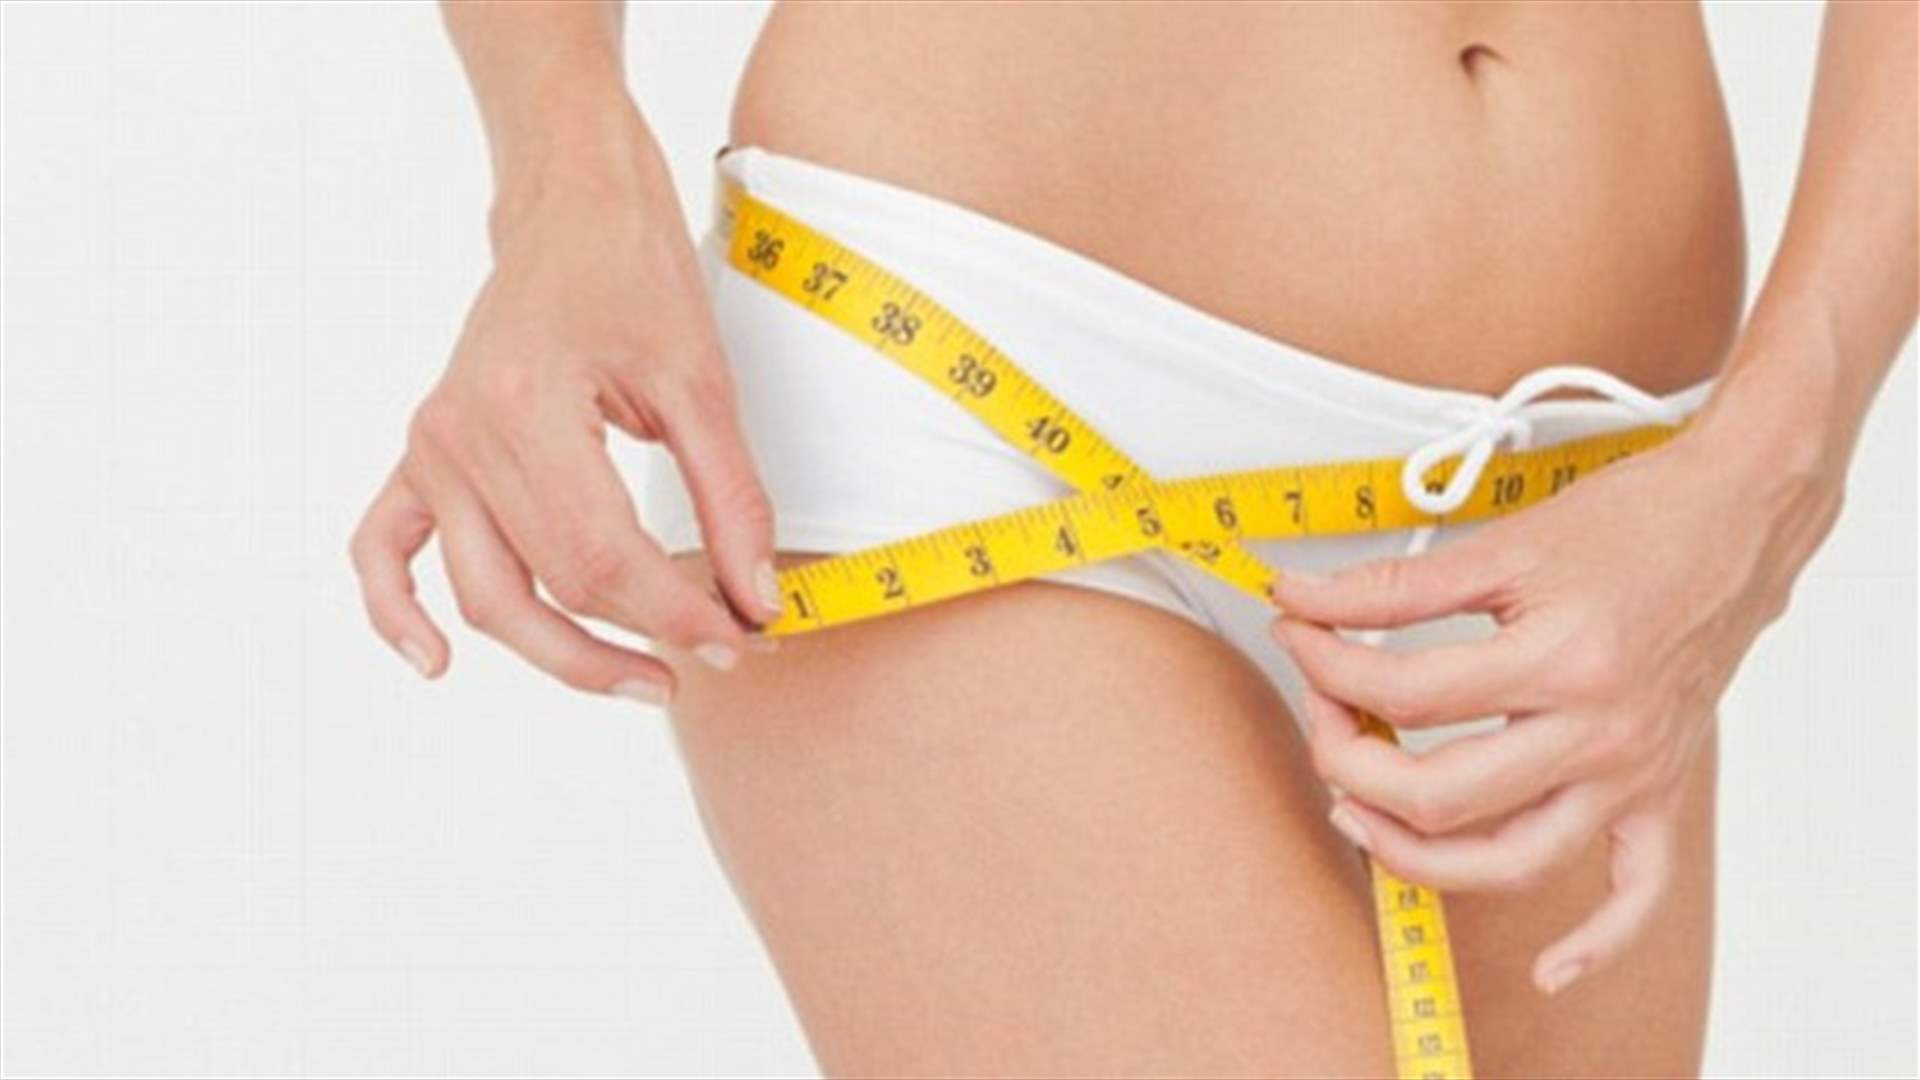 اختبار بسيط لمعرفة نسبة الدهون في البطن